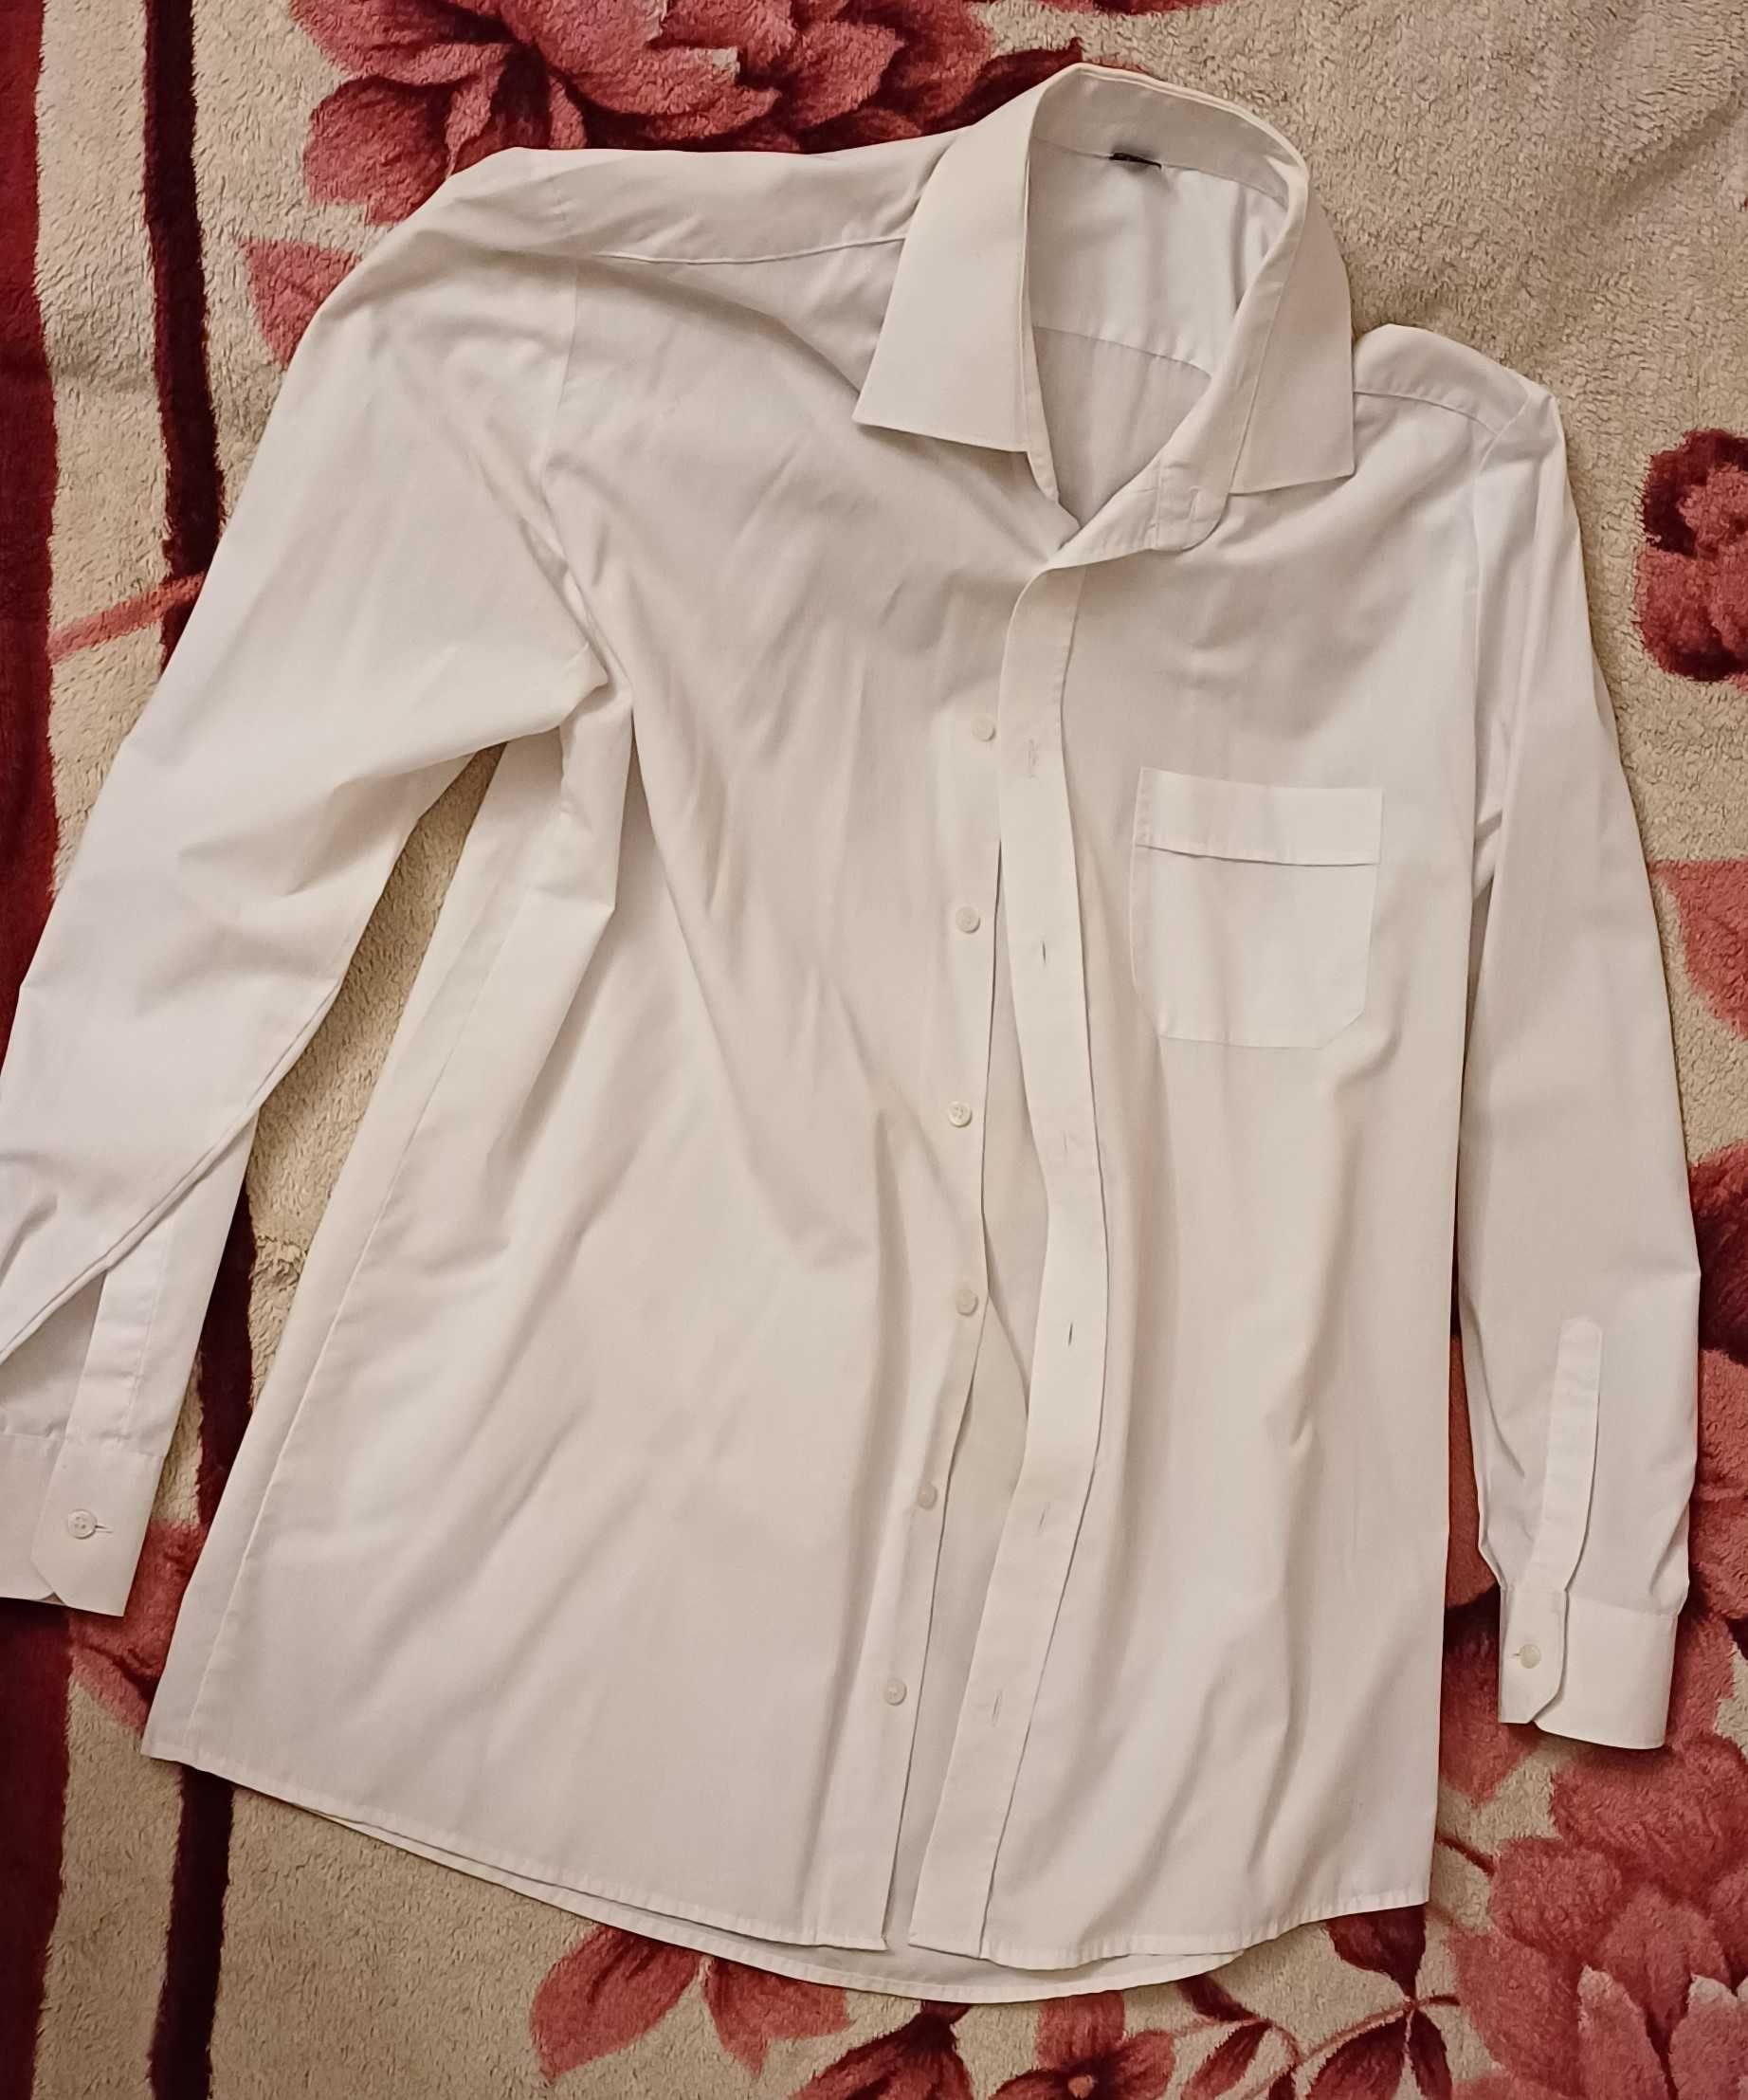 Koszule męskie używane M z długim rękawem - 3 zł sztuka